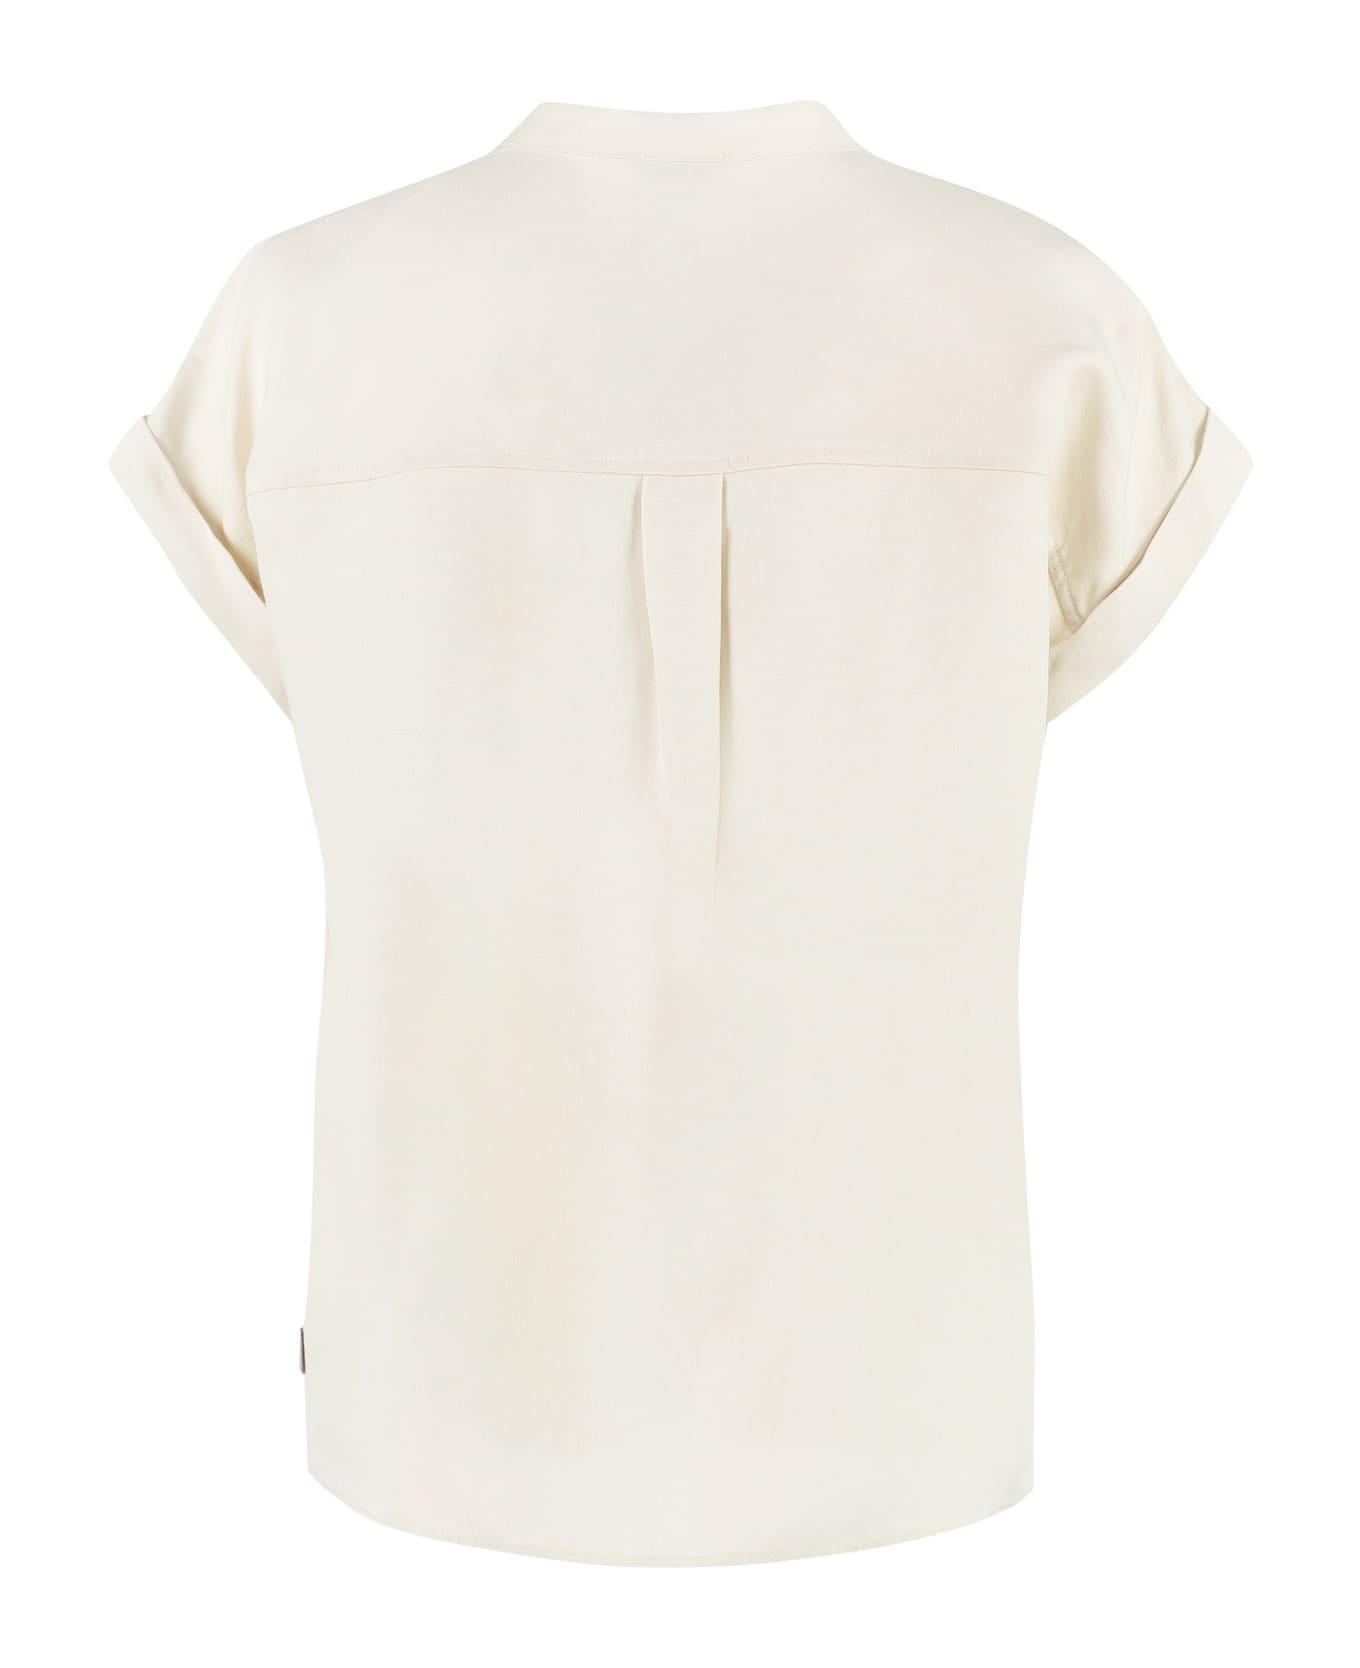 Woolrich Short Sleeve Linen Blend Shirt - panna シャツ